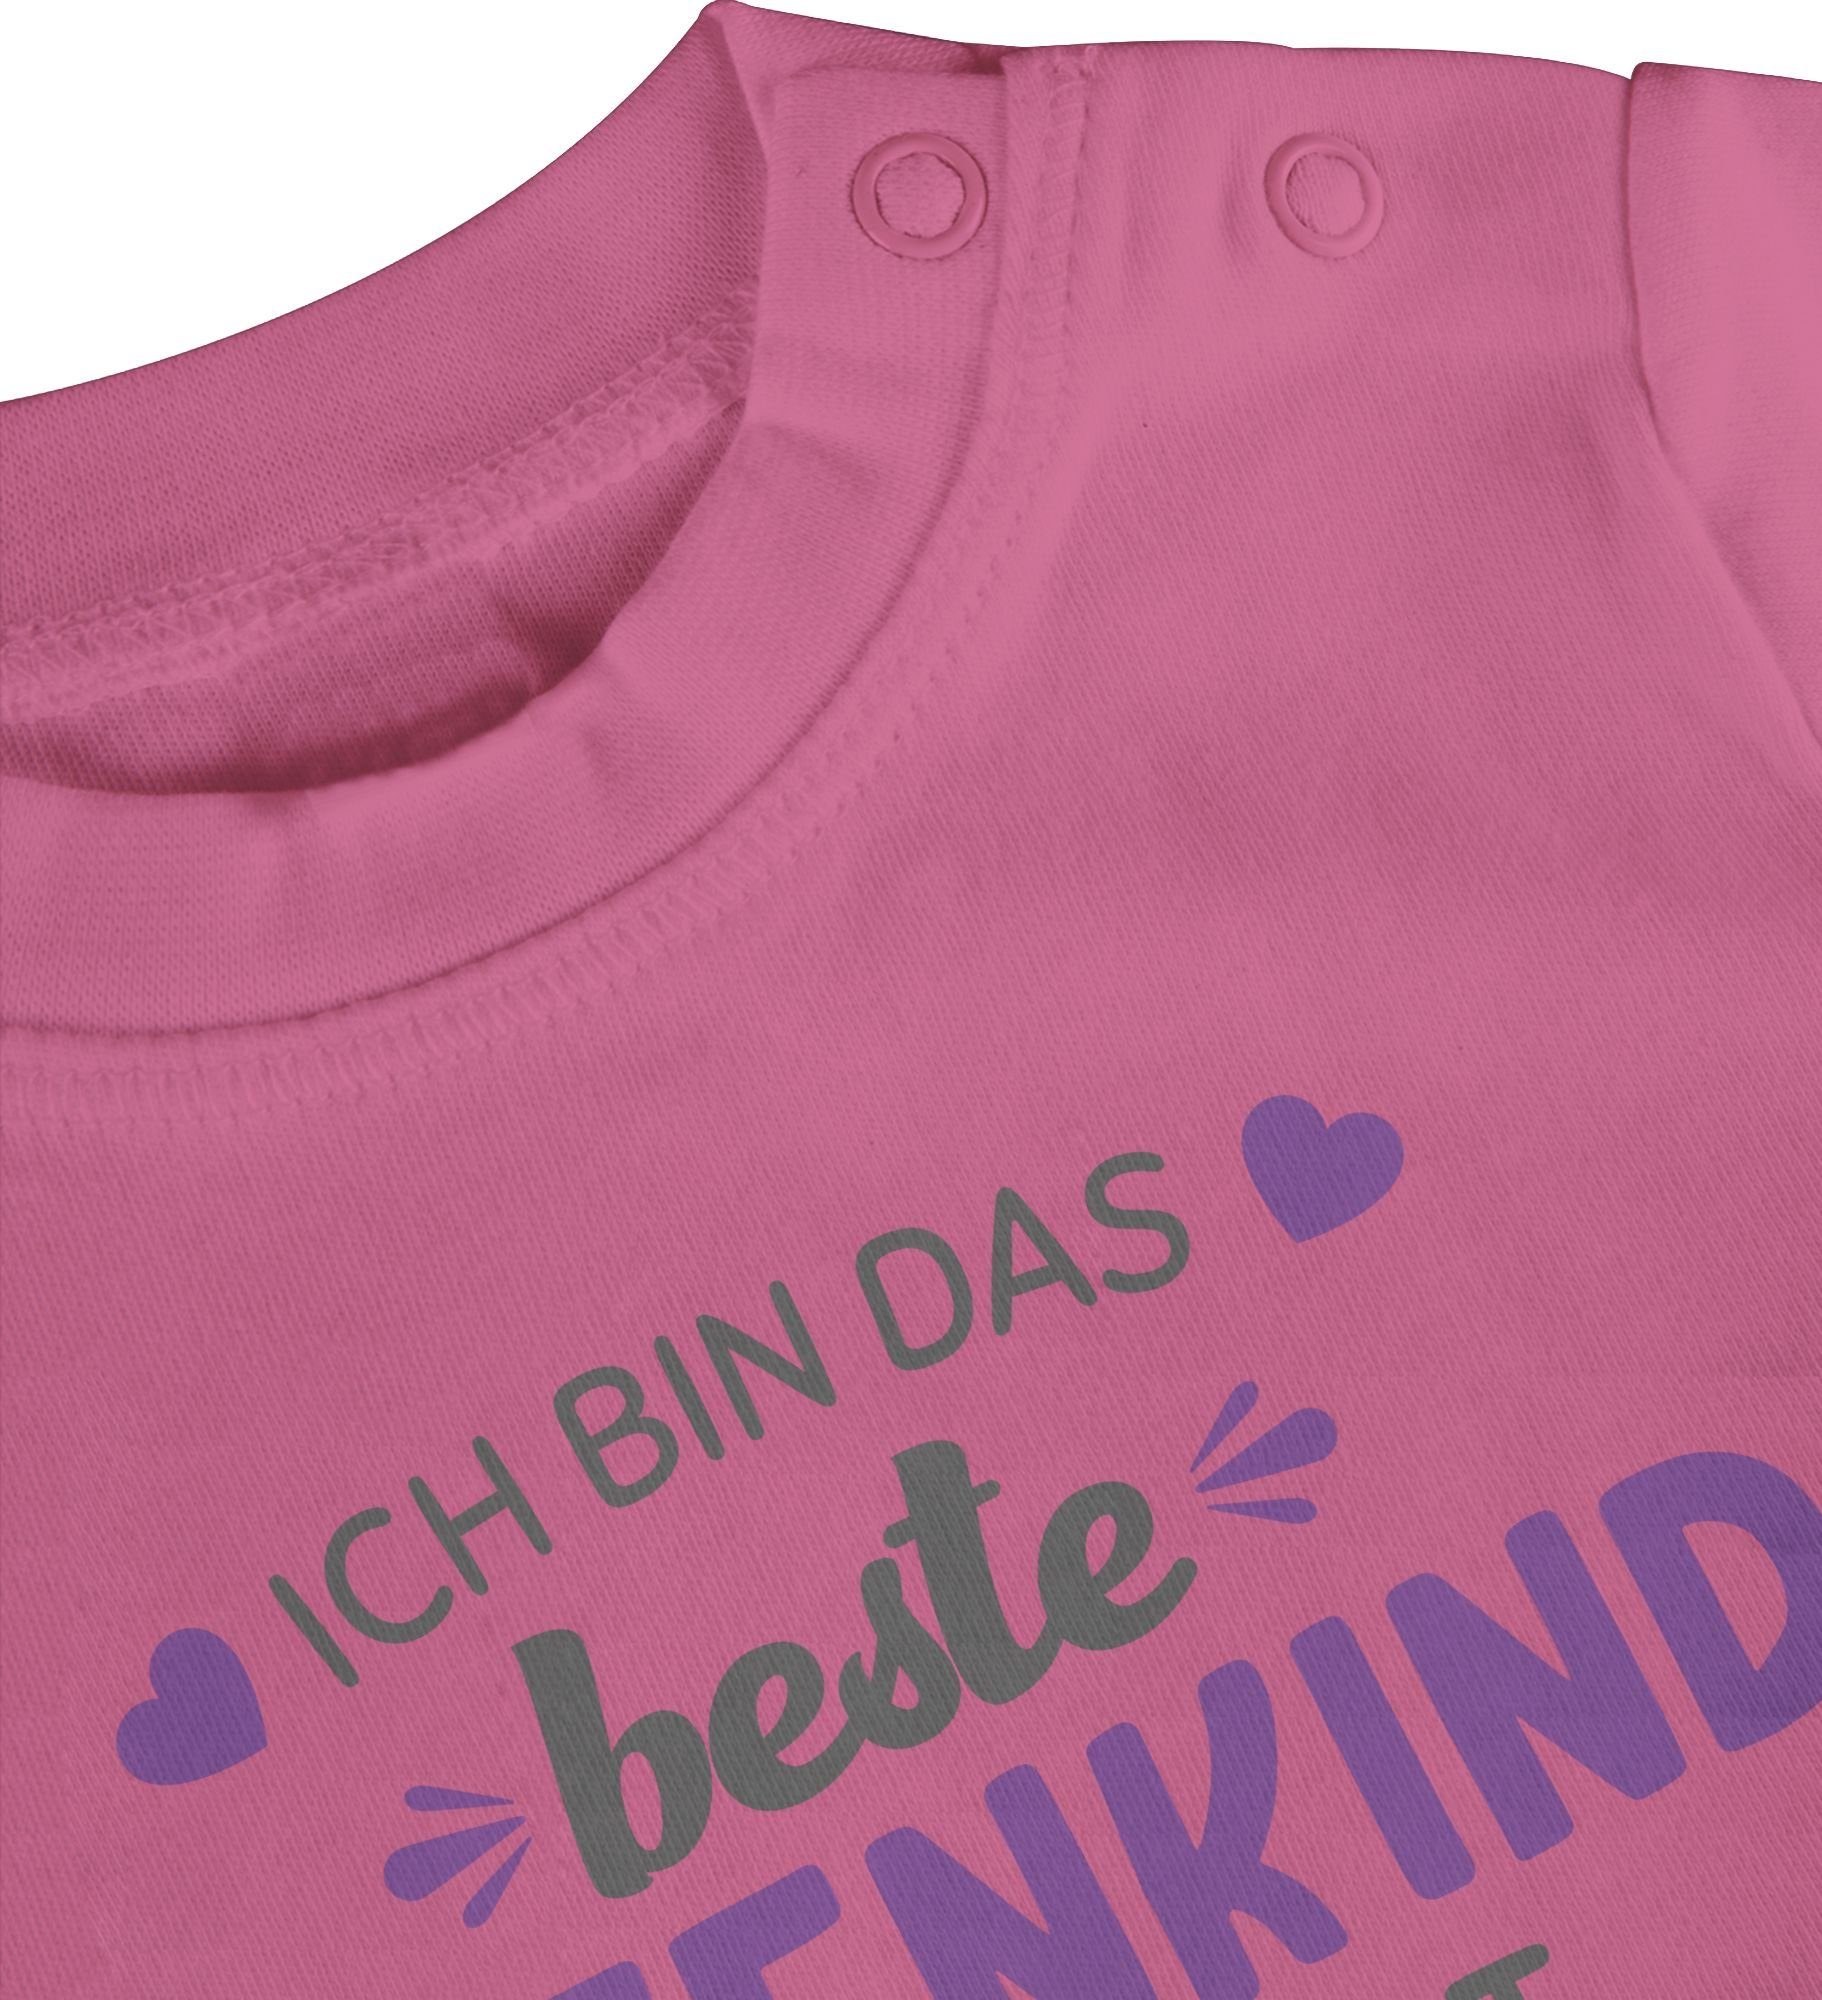 2 Baby Shirtracer Pink bin grau/lila Welt Patentante Patenkind T-Shirt Ich der beste das